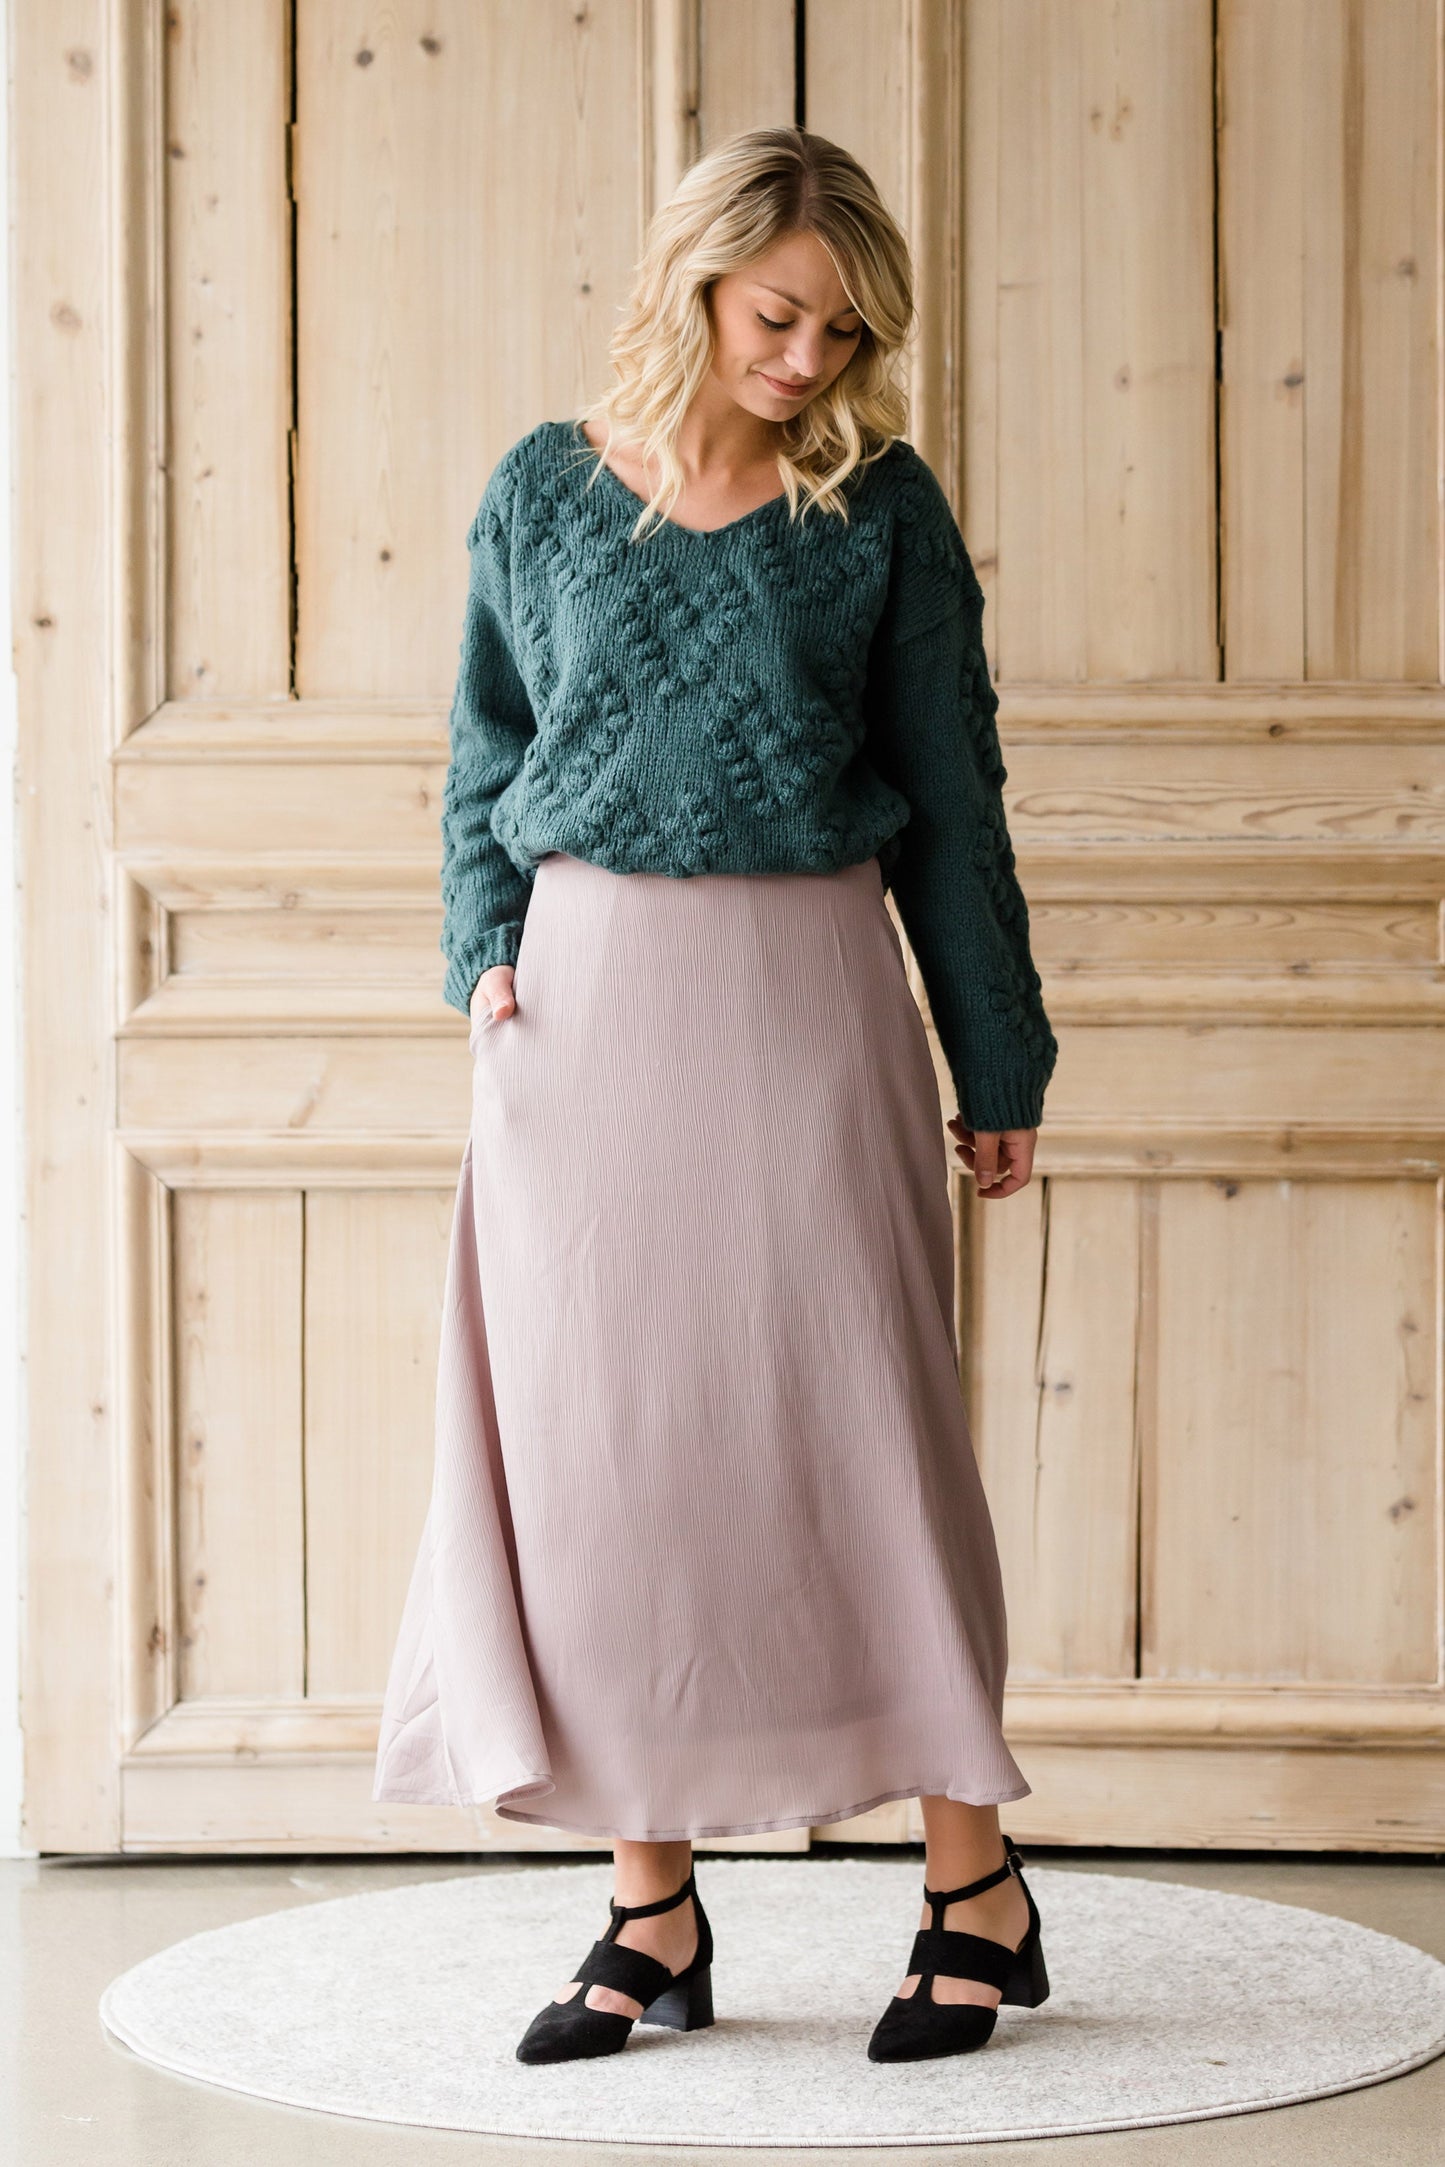 Textured Woven A-Line Skirt - FINAL SALE Skirts